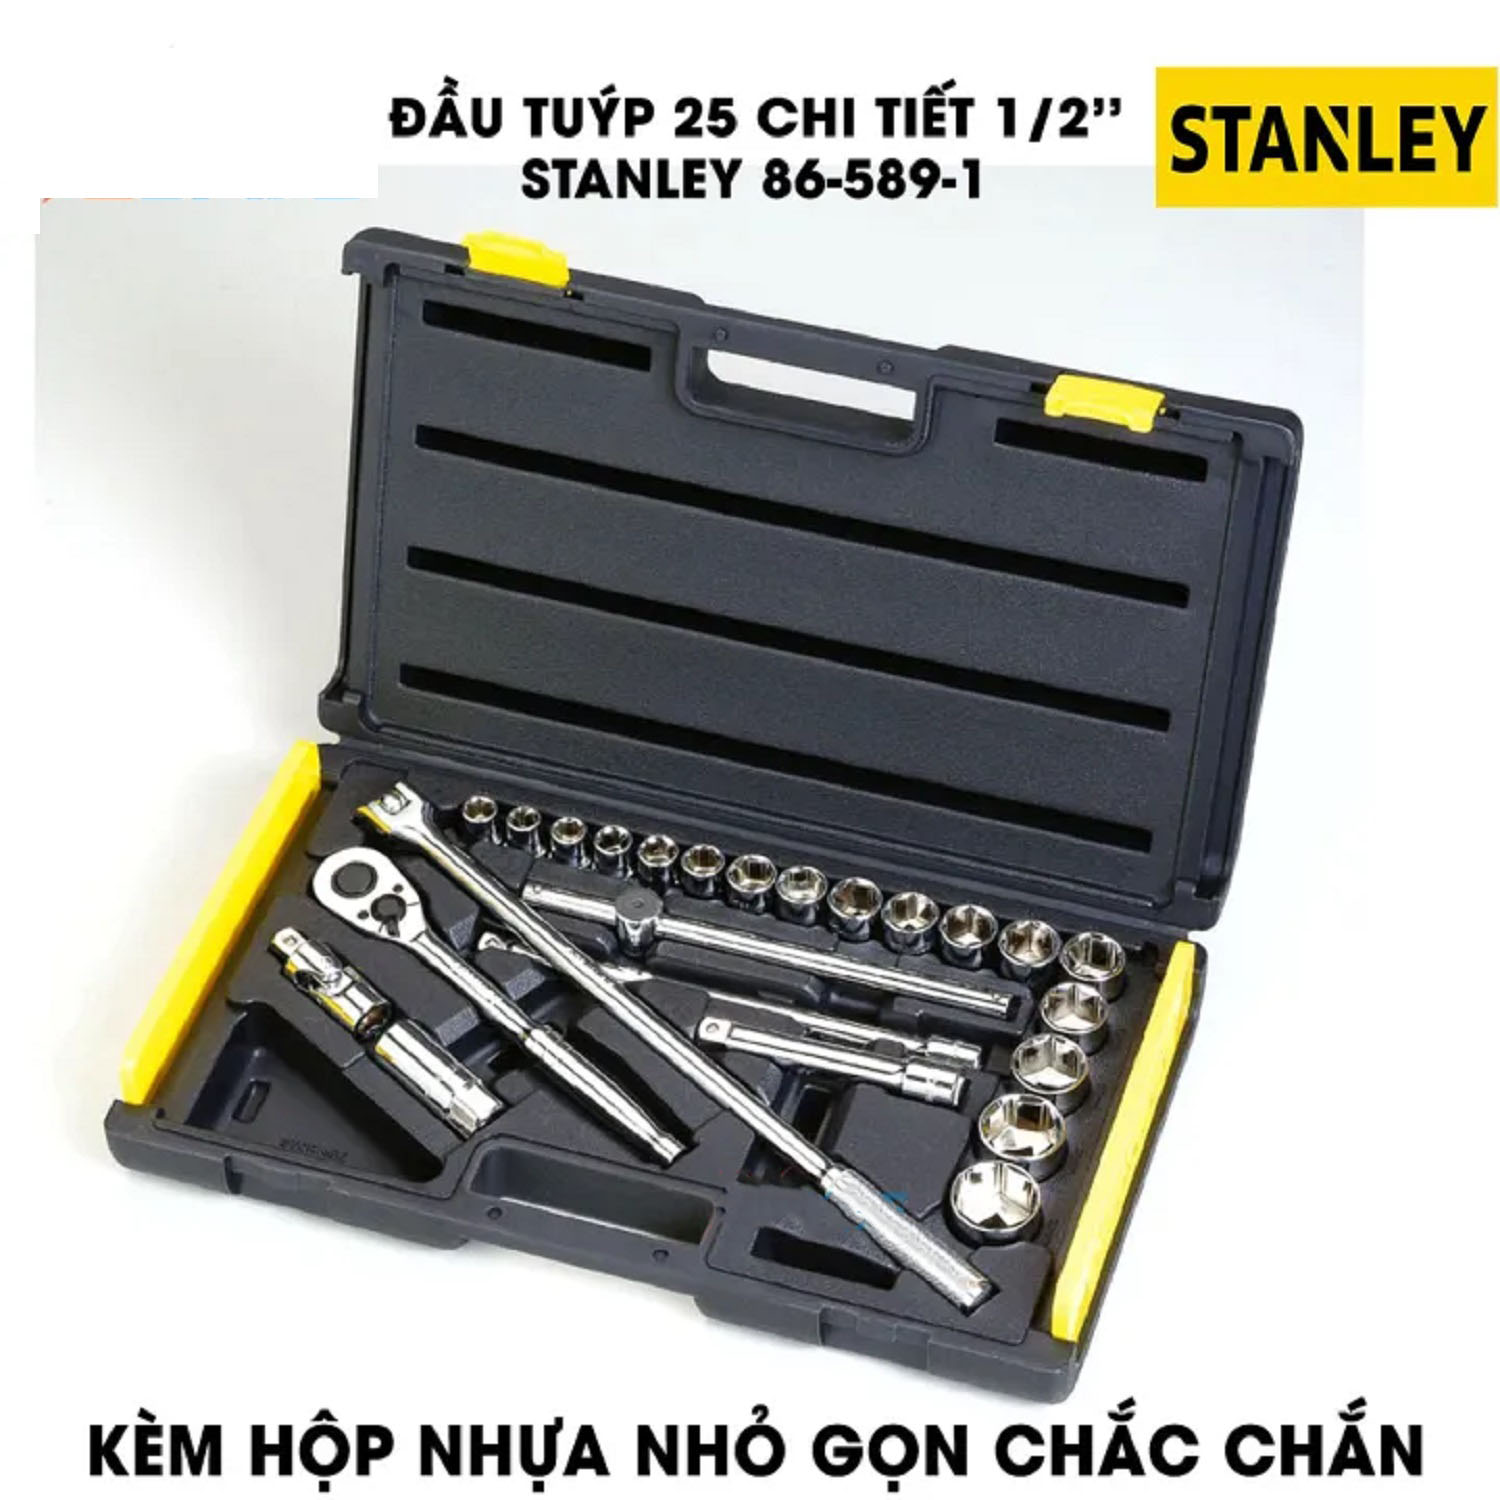 Hình ảnh 6 của mặt hàng Đầu tuýp bộ khẩu Stanley 86-589-1